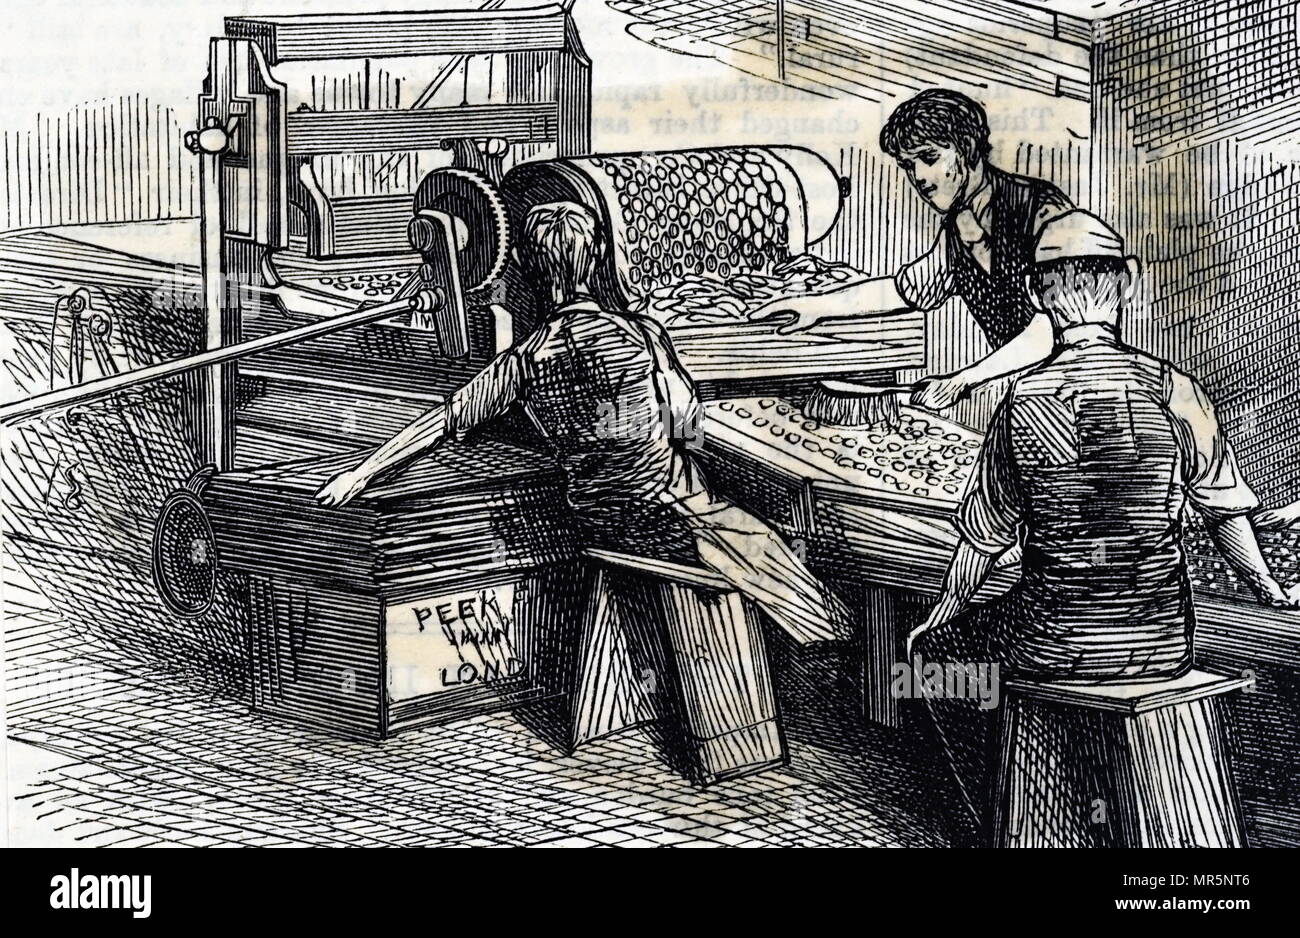 Kupferstich mit der Darstellung eines Keks Schneidemaschine der Peek Frean & Co's Keksfabrik. Vom 19. Jahrhundert Stockfoto